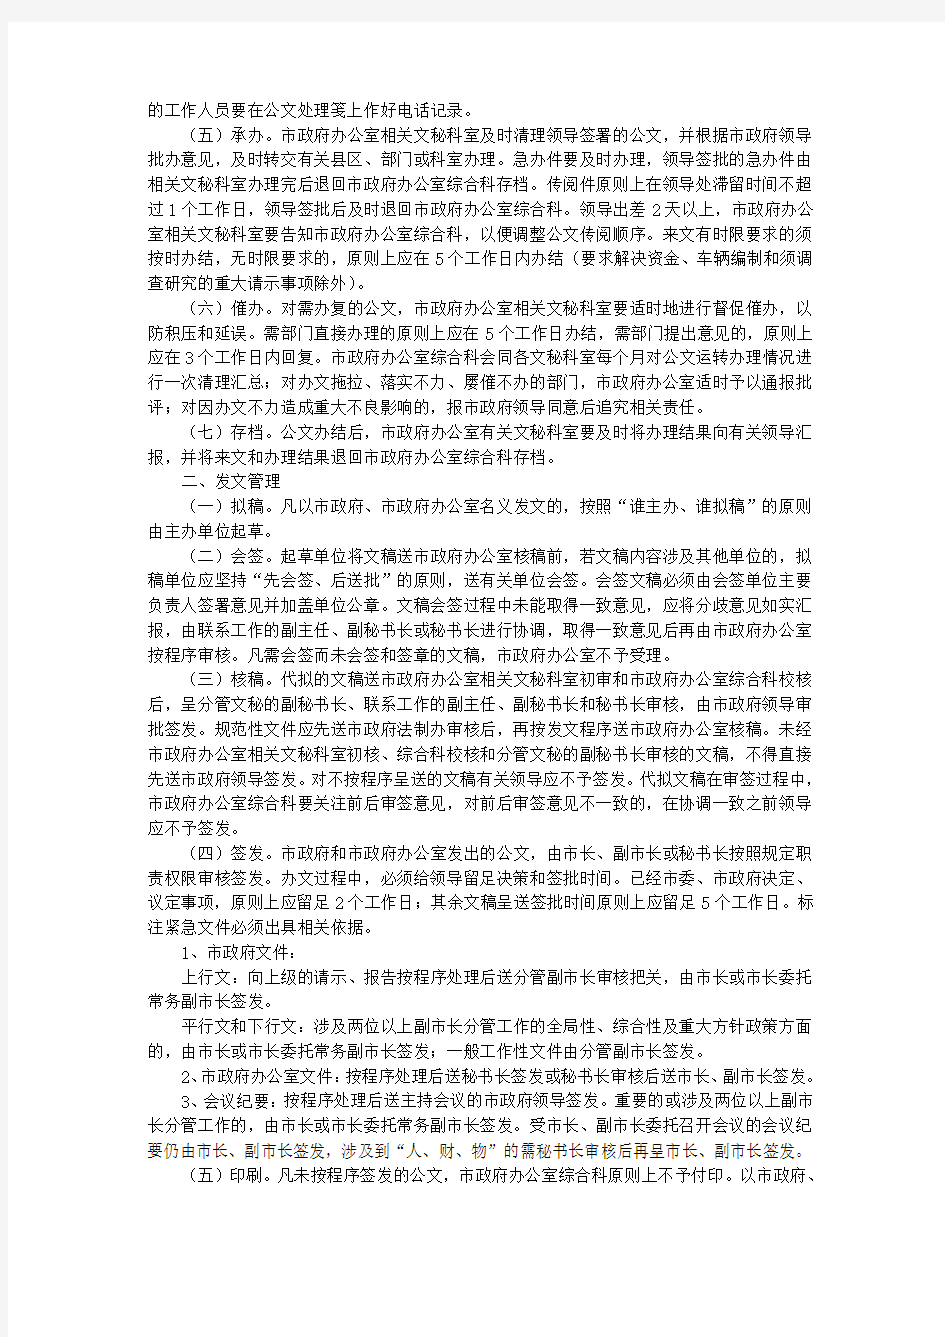 广元市人民政府办公室关于印发《公文办理程序规定》《公文代拟稿起草